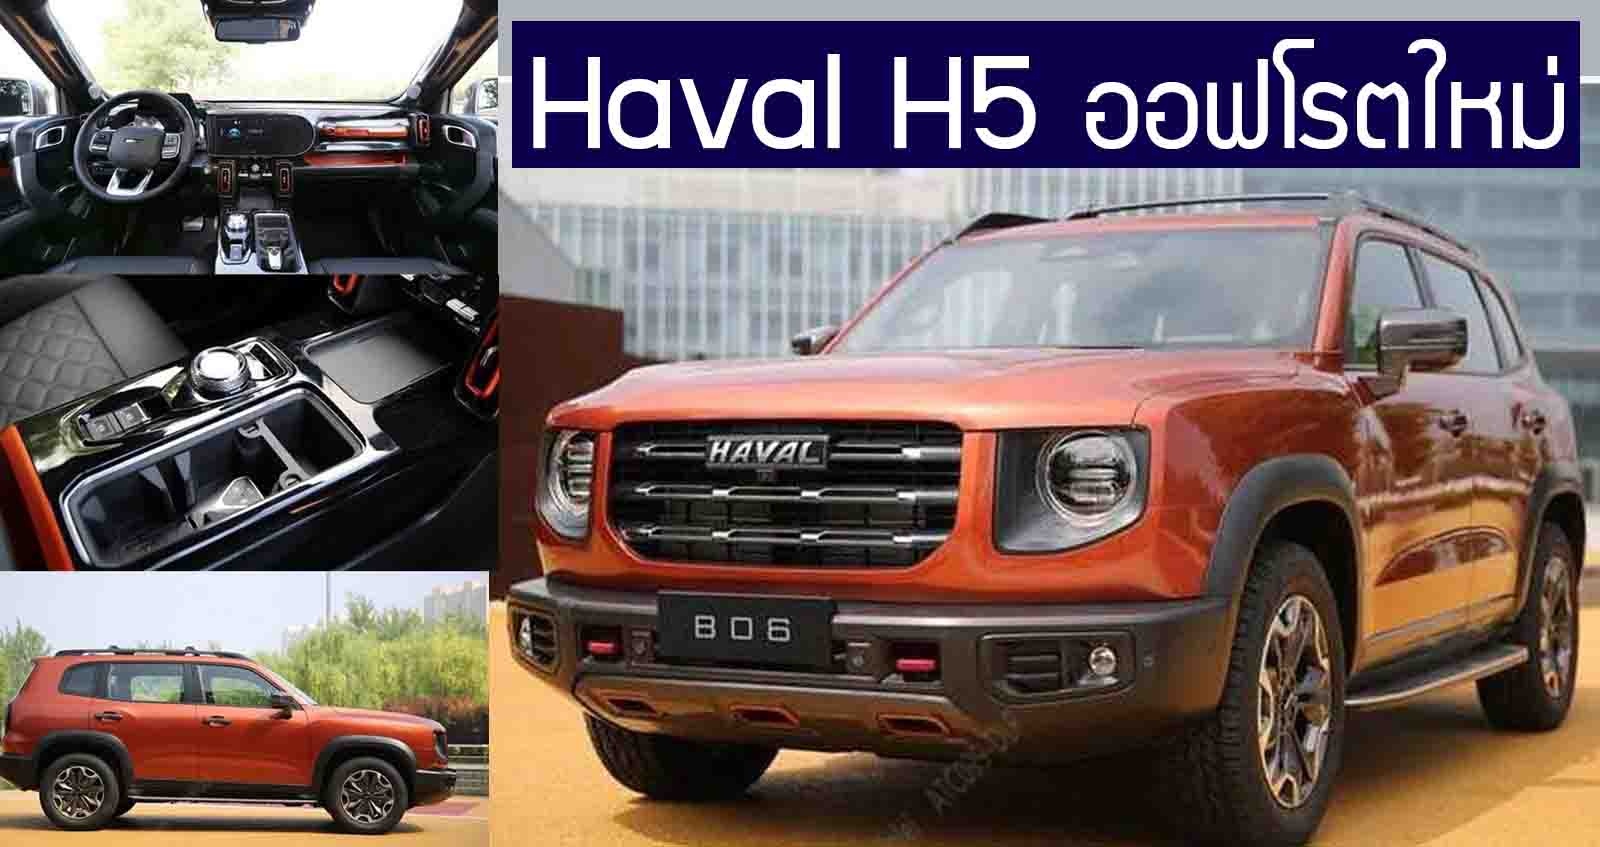 ภาพคันจริง Haval H5 ออฟโรตใหม่ ในเครือ Great Wall Motors